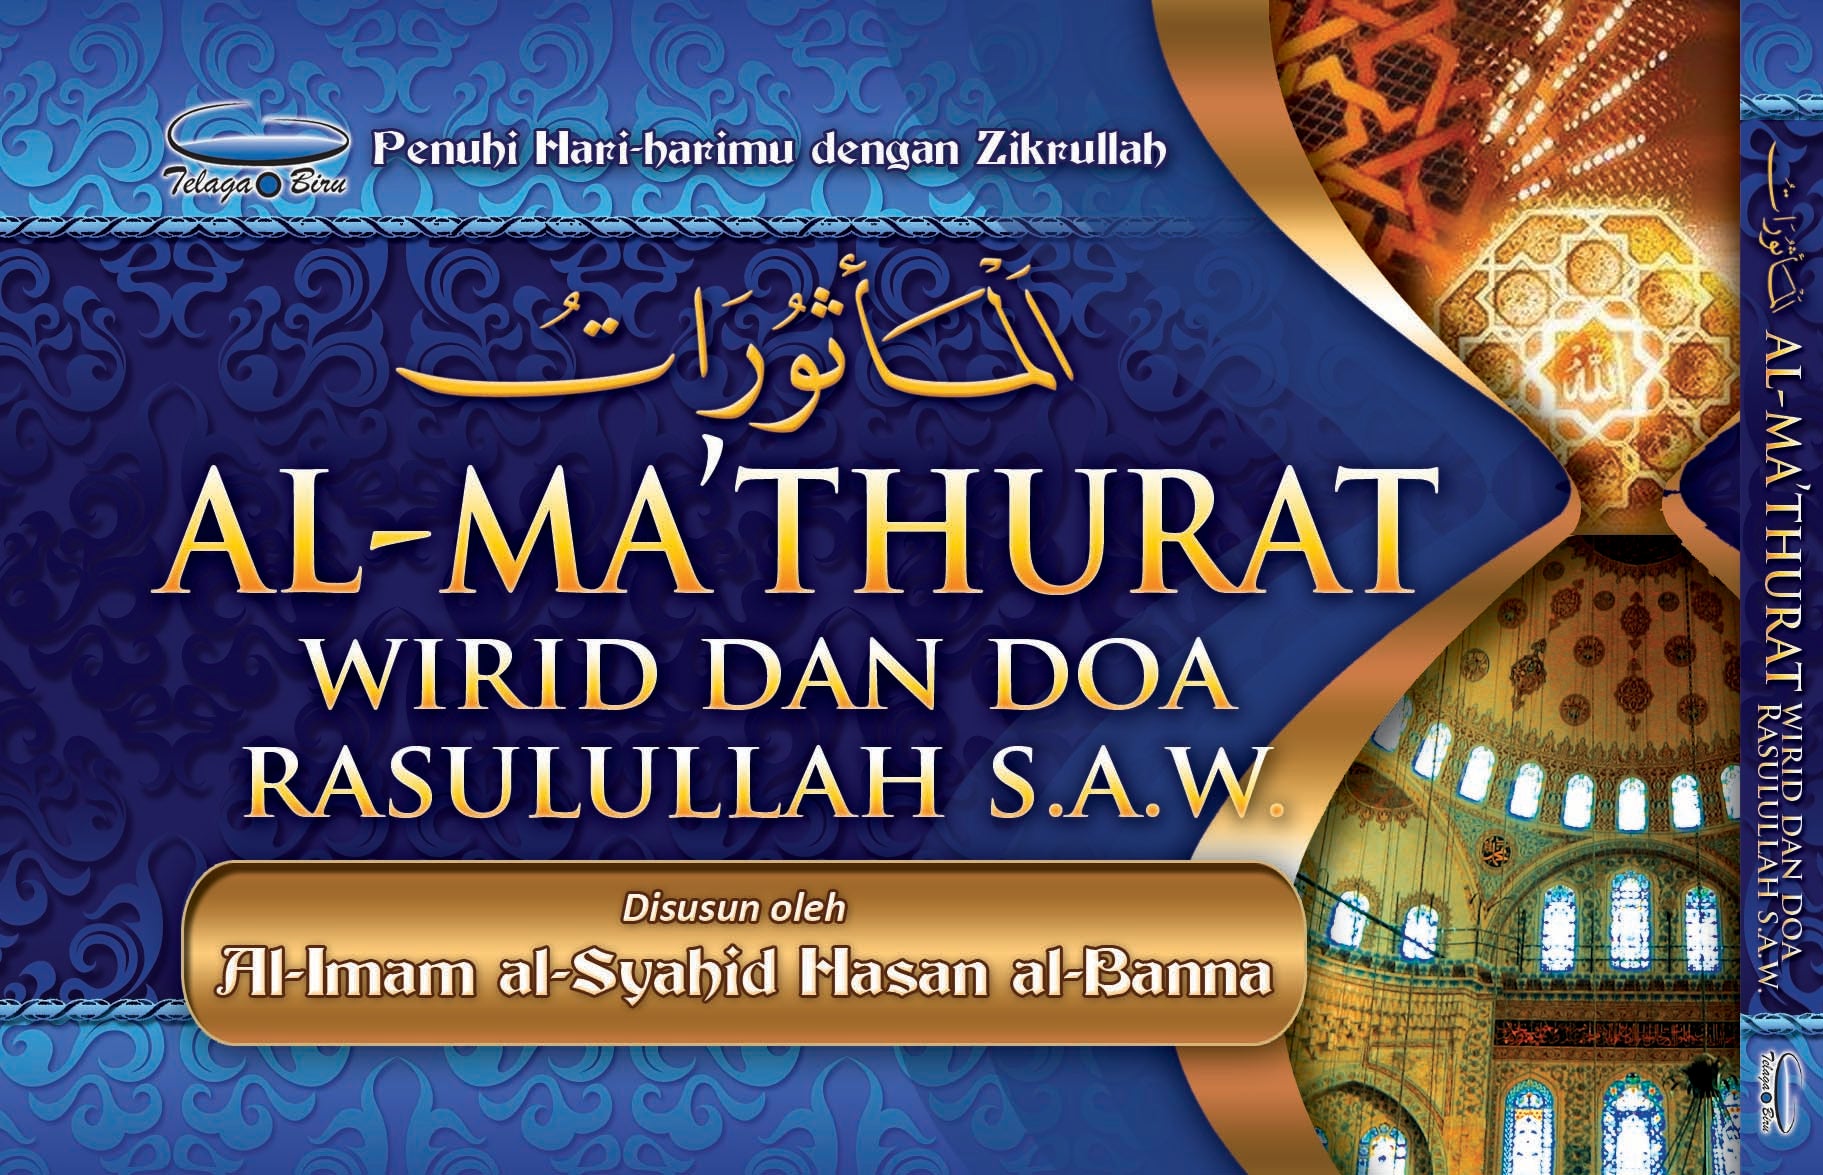 Al-Ma’thurat Wirid dan Doa Rasulullah - (TBBK1129)